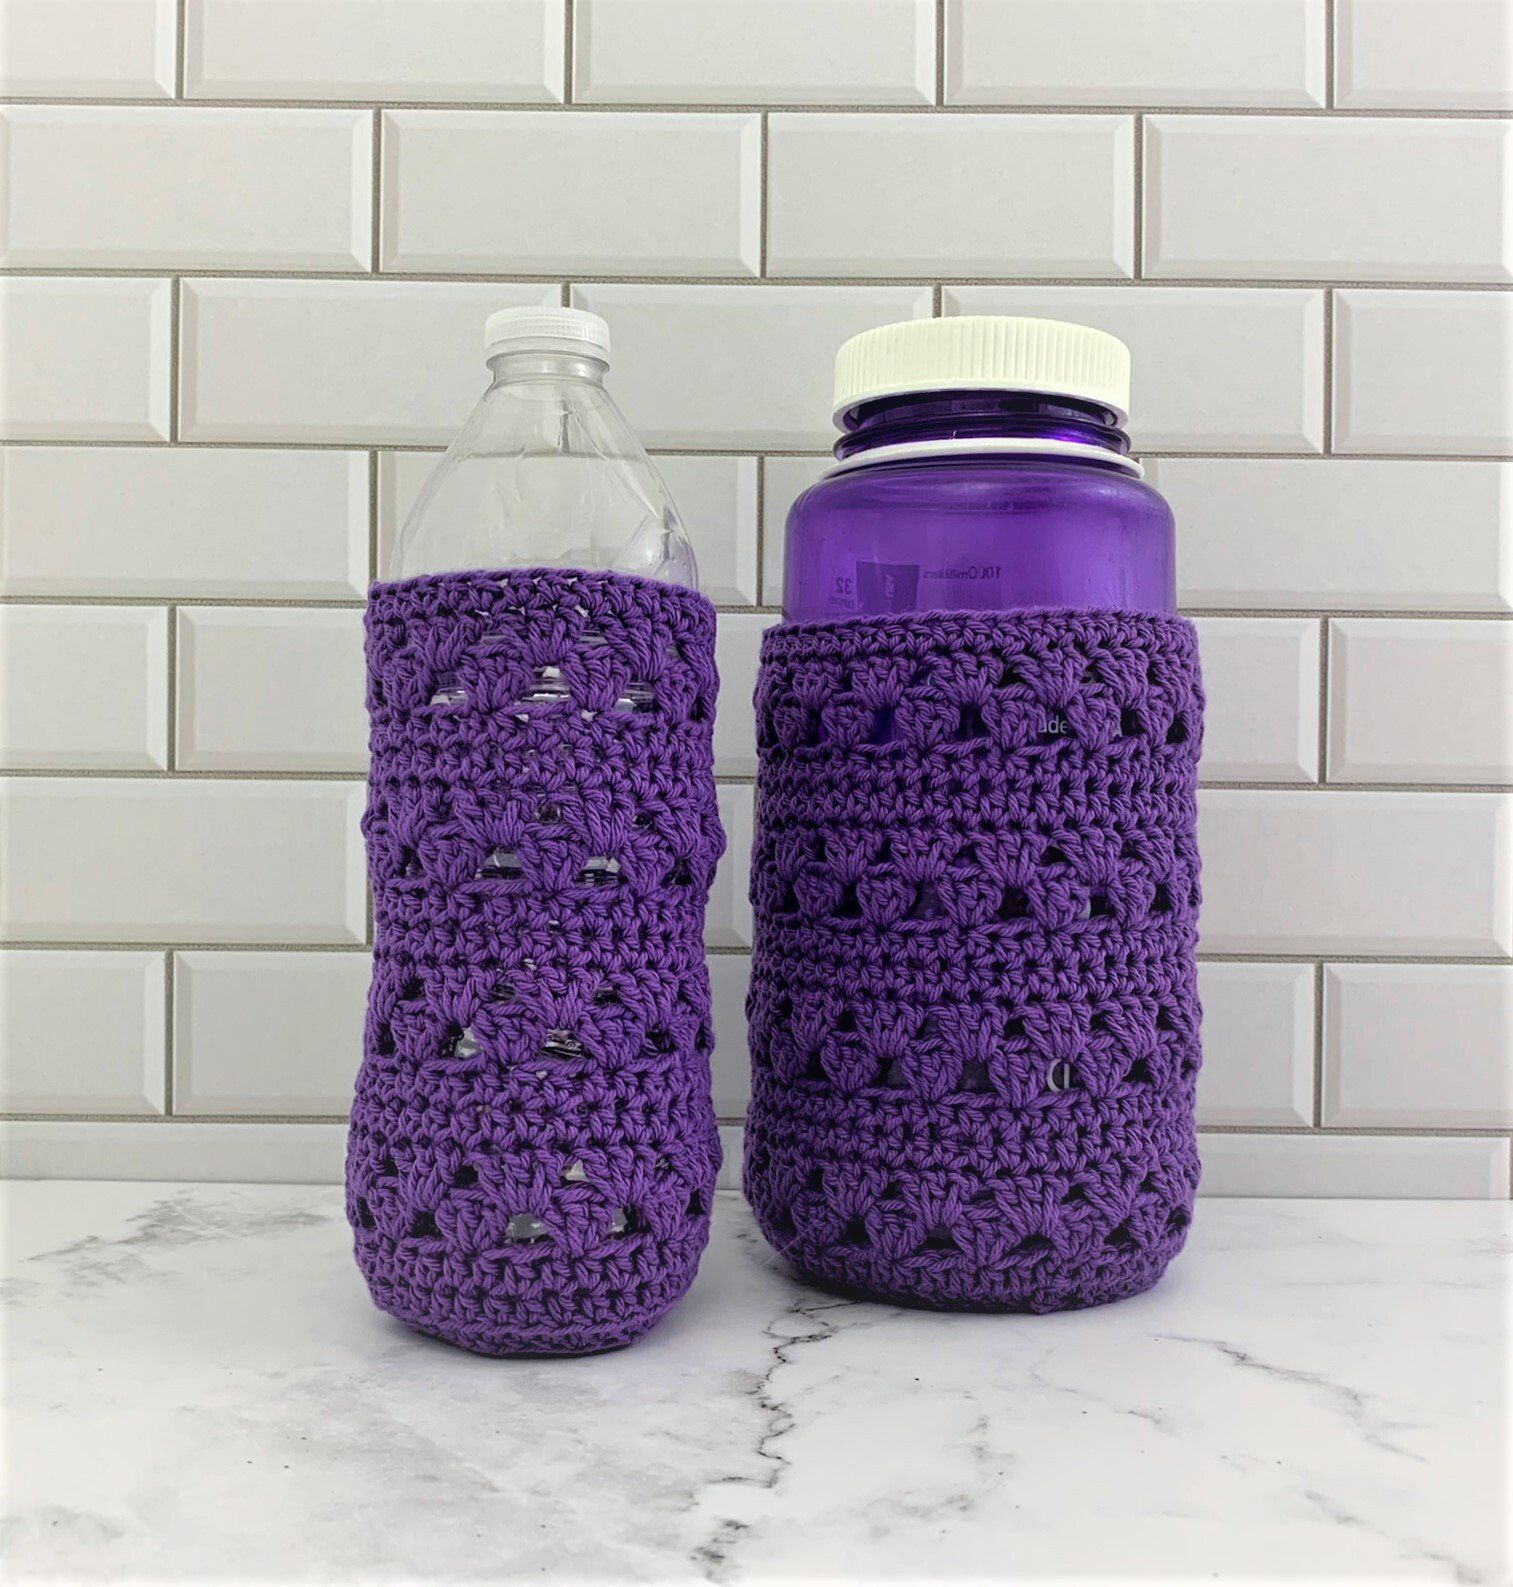 Crochet water bottle cozy pattern